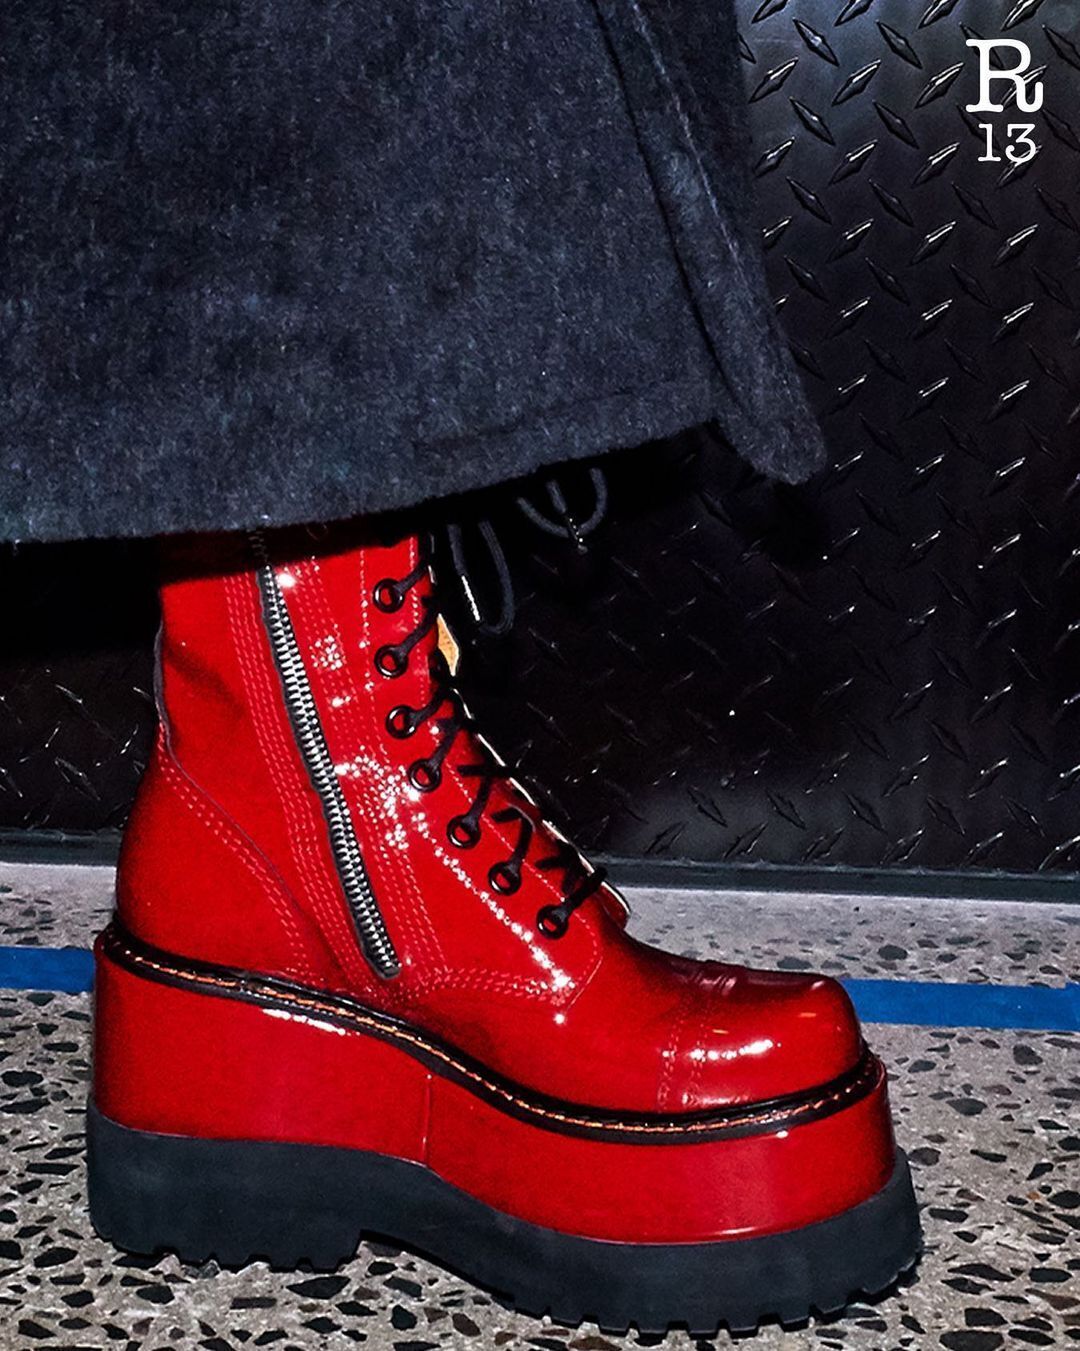 Червоні грубі черевики зі шнурівкою на високій підошві від R13.